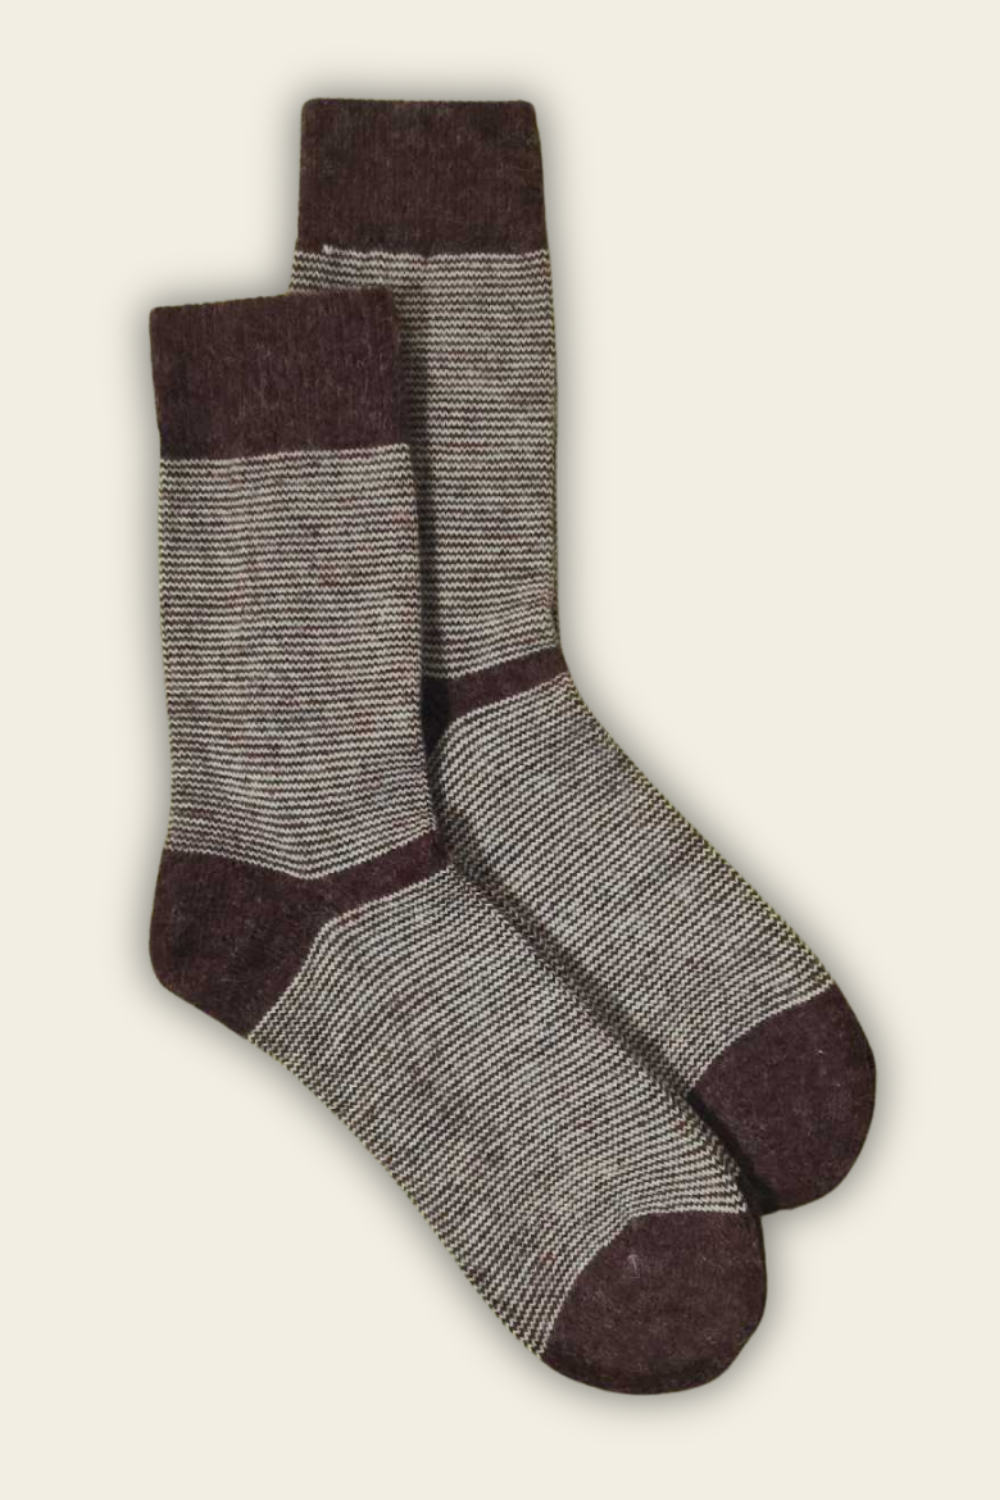 Socken mit Alpaka und Merino-Wolle - dunkelrot - 2 Paar